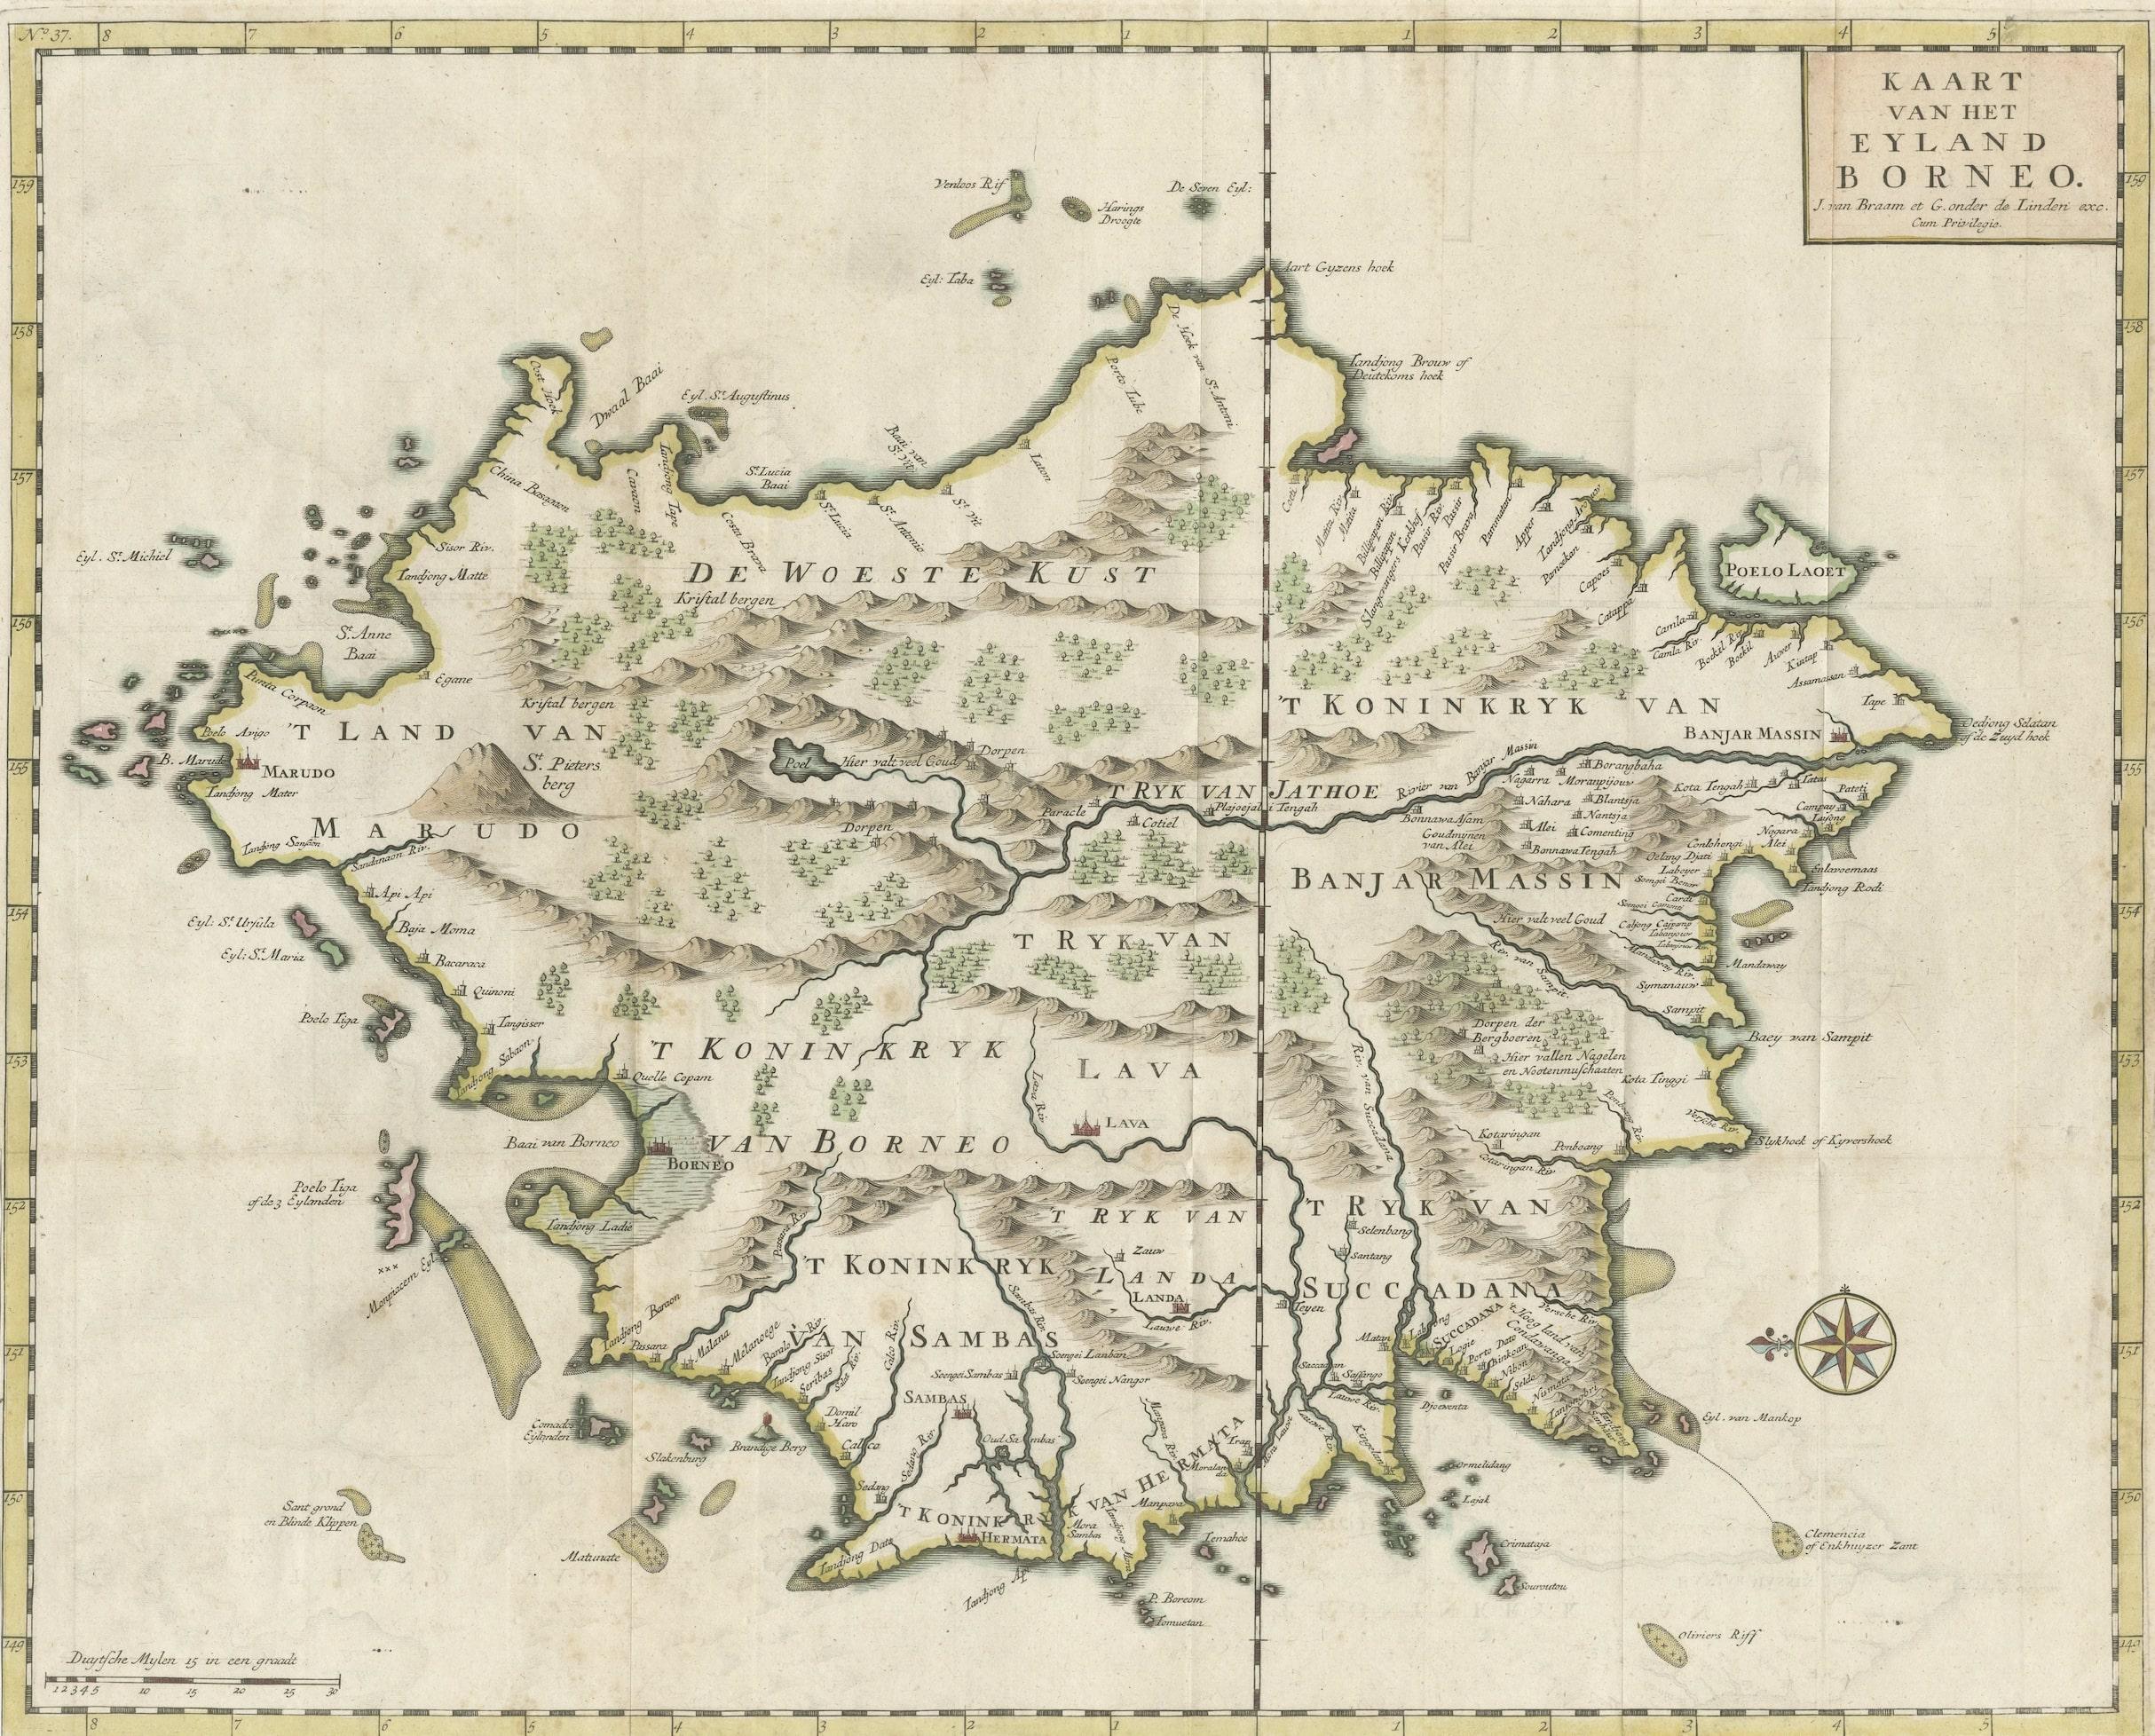 Antique map titled 'Kaart van het Eyland Borneo'. Original antique map of the island of Borneo. Published 1724-1726 by Joannes van Braam and Gerard Onder de Linden in 